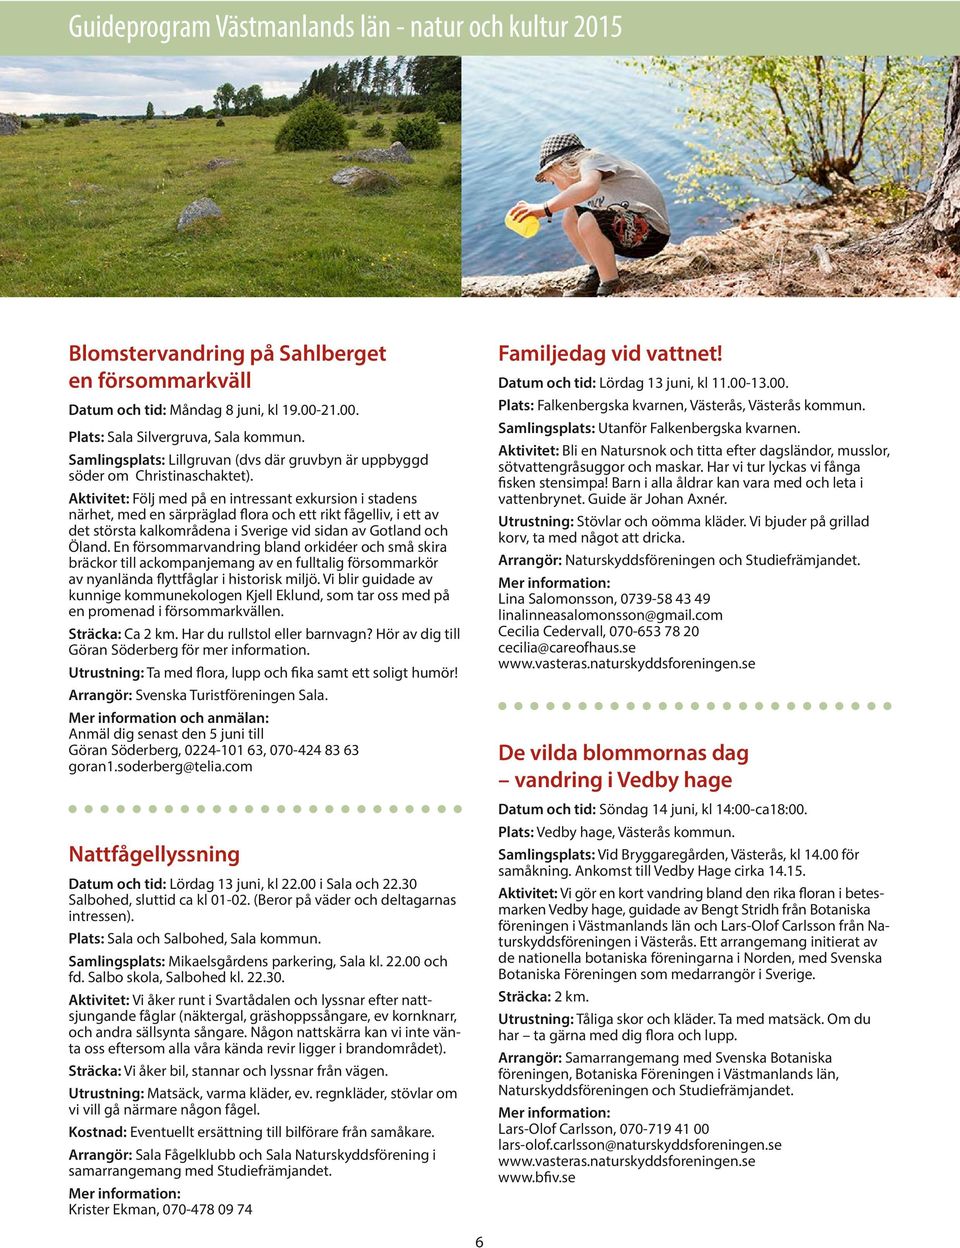 Aktivitet: Följ med på en intressant exkursion i stadens närhet, med en särpräglad flora och ett rikt fågelliv, i ett av det största kalkområdena i Sverige vid sidan av Gotland och Öland.